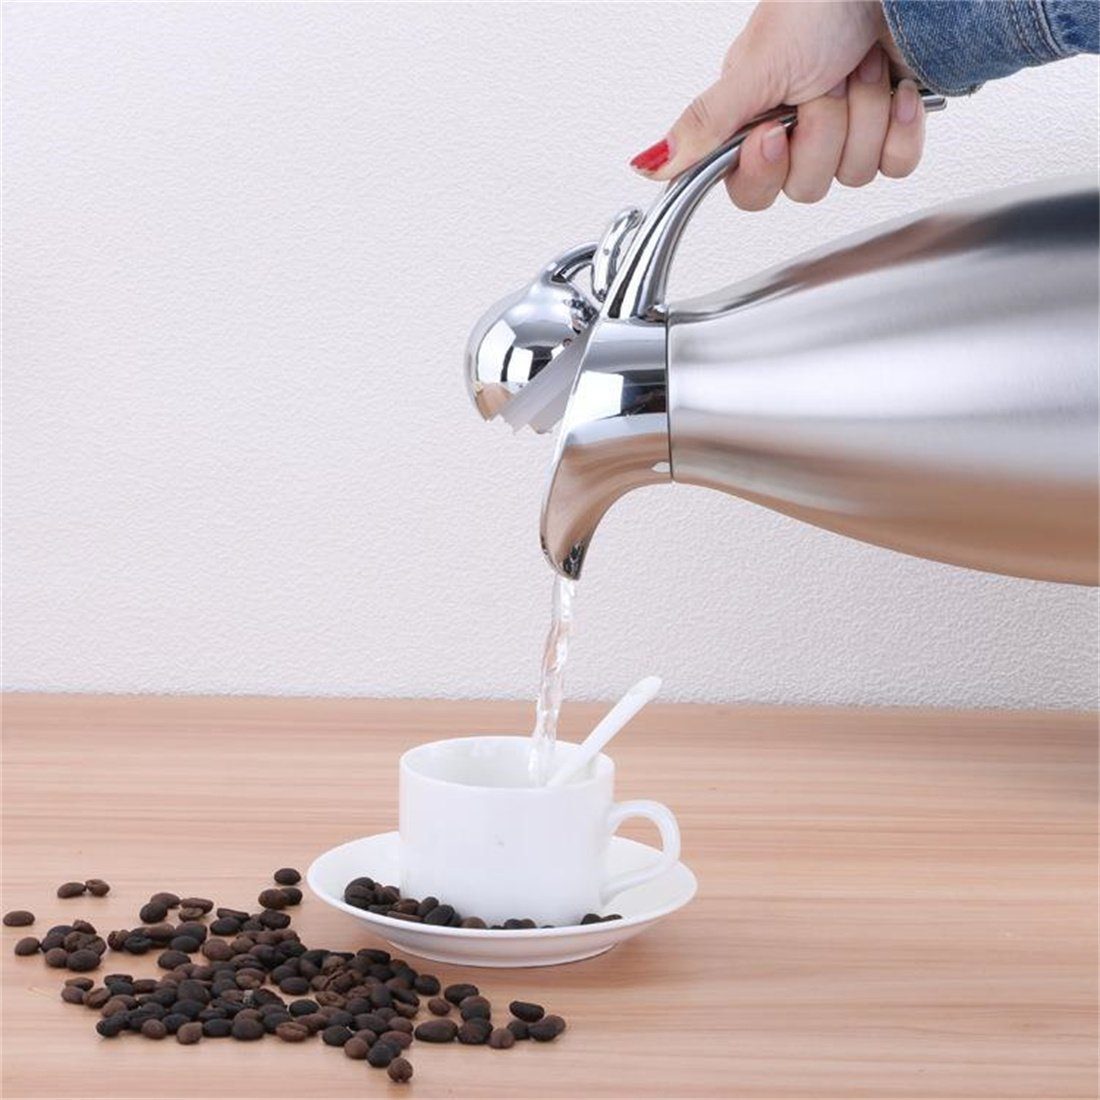 Heißwasserkocher, Kaffeekanne Isolierter 2.0L Isolierkanne Edelstahl-Wasserkocher, DÖRÖY Silber